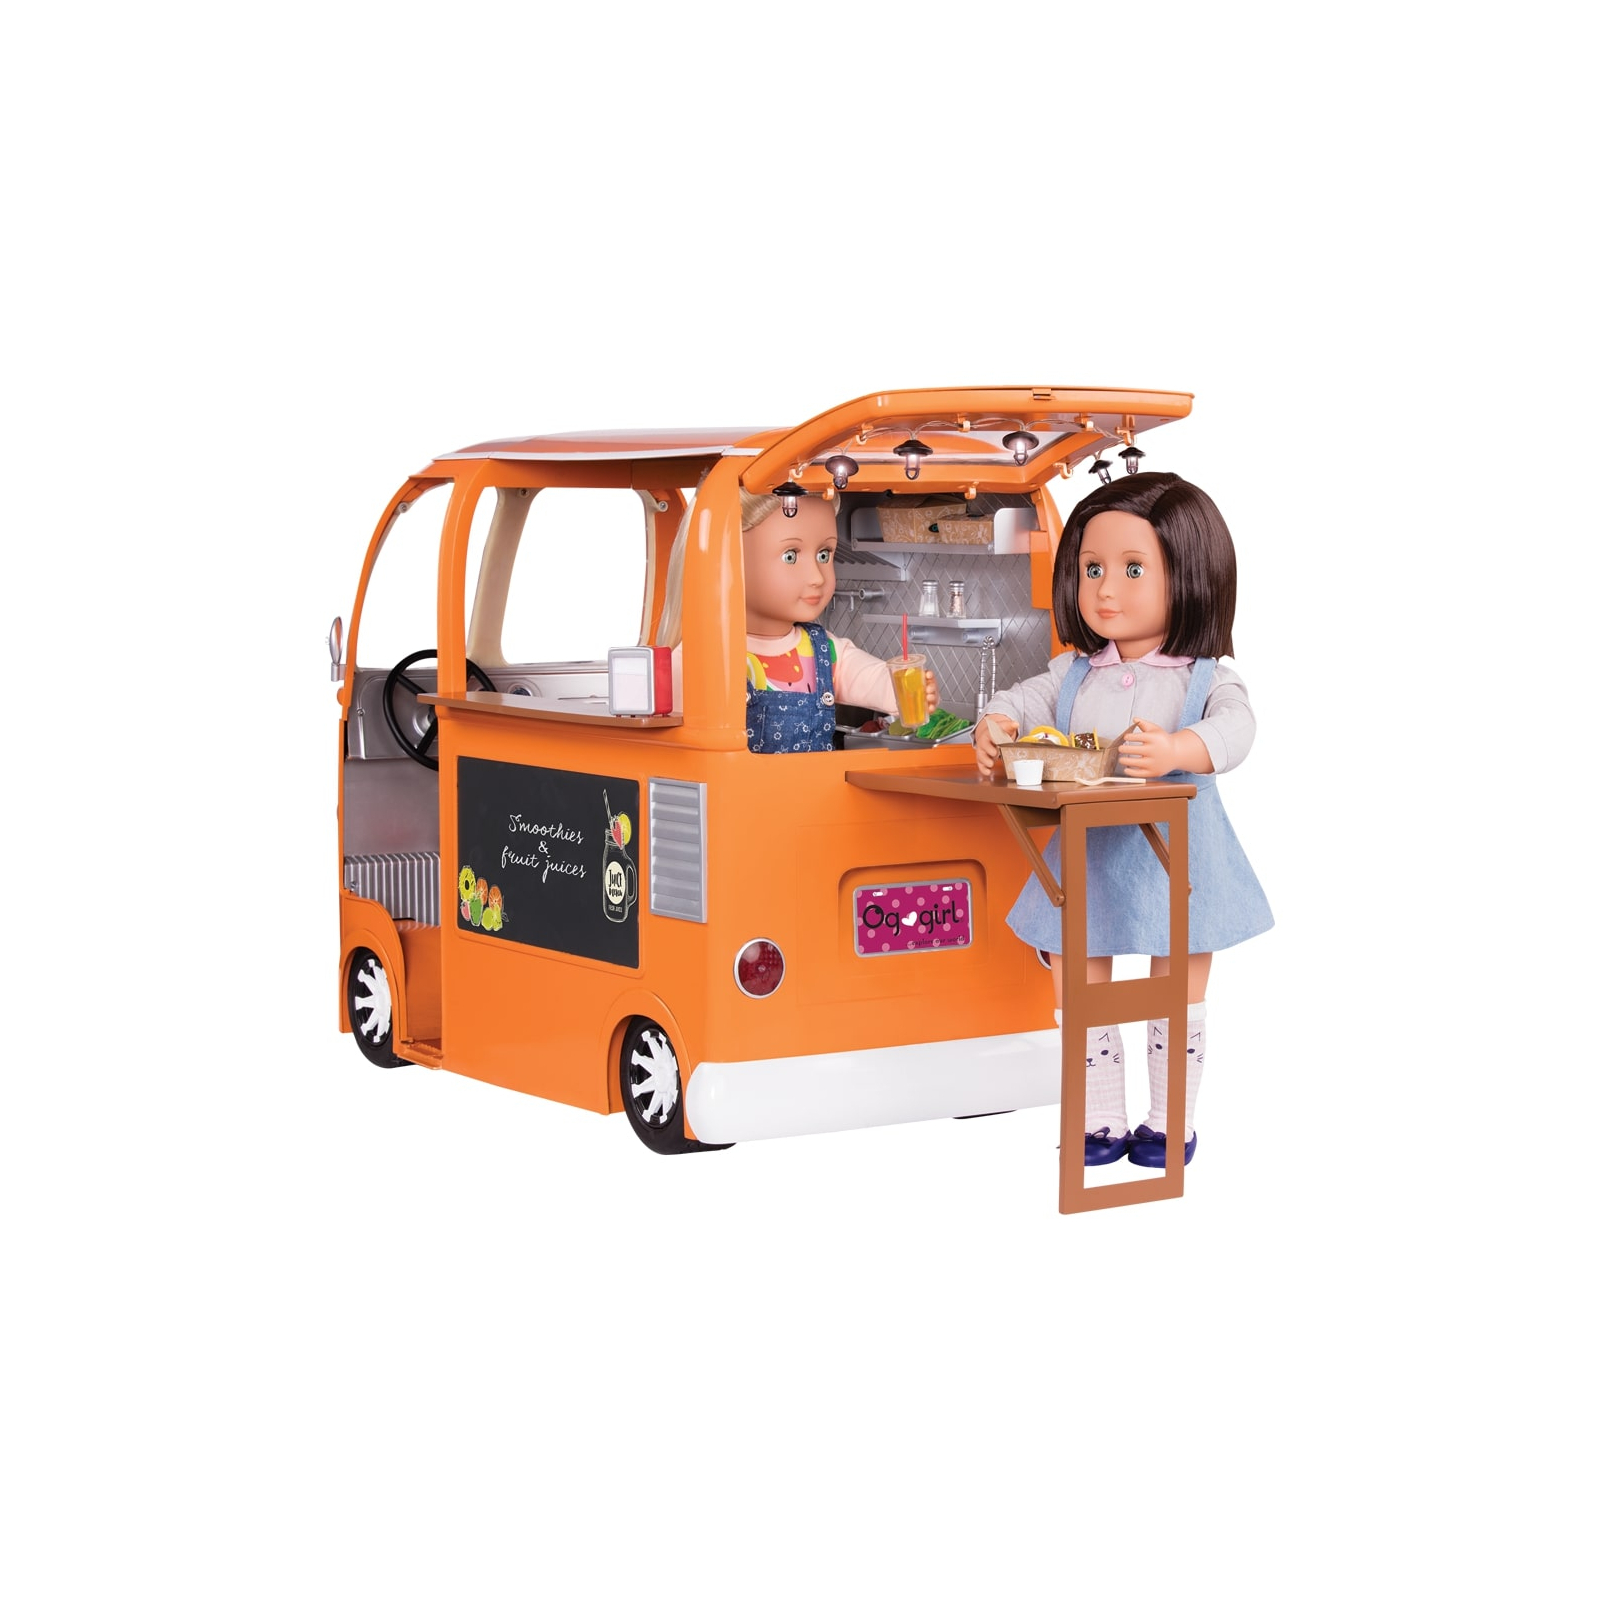 Аксессуар к кукле Our Generation Продуктовый фургон (BD37475) изображение 3